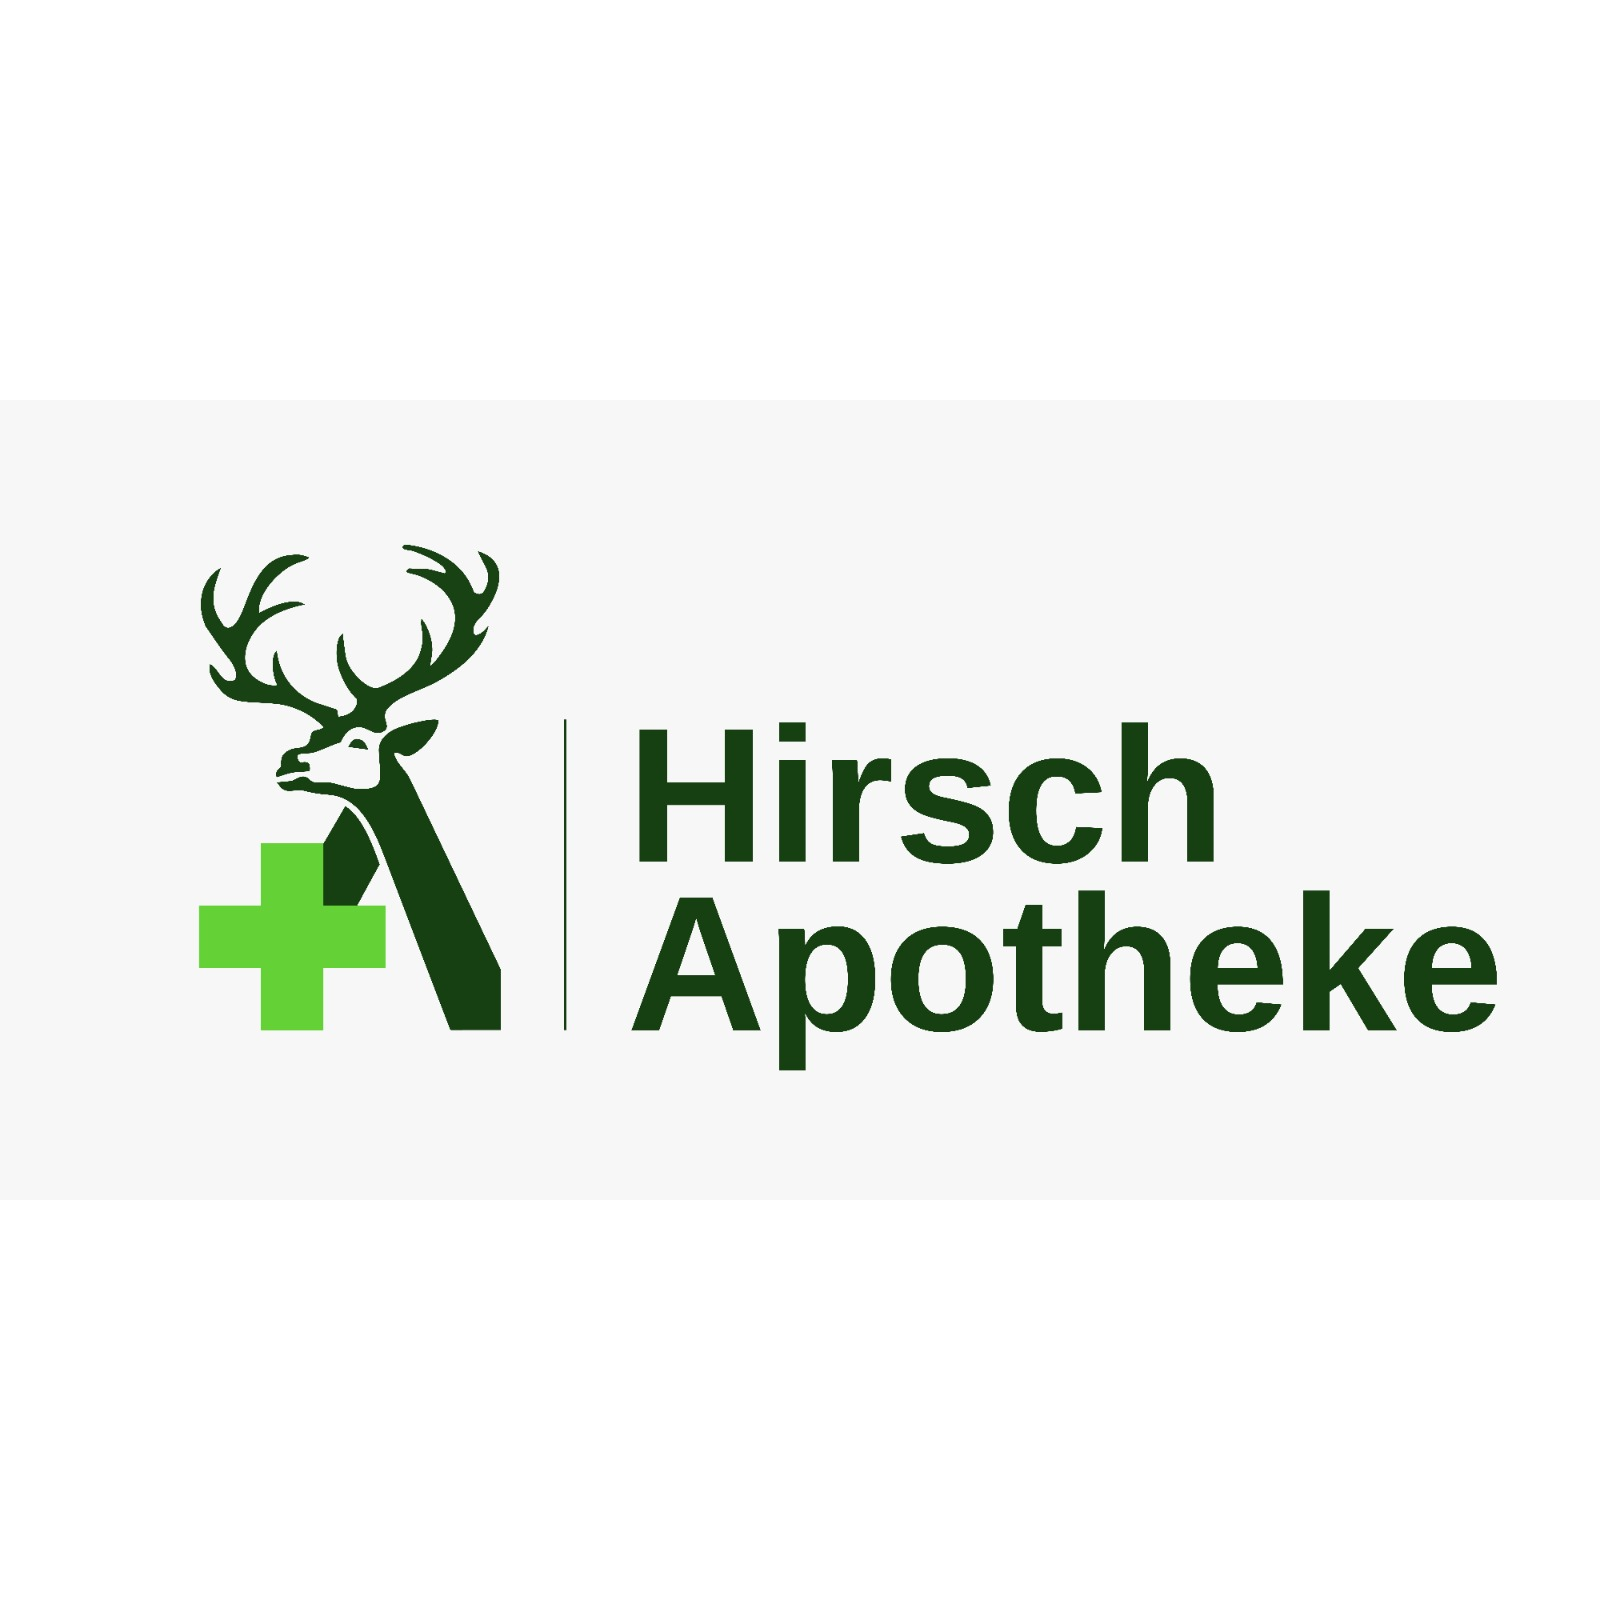 Hirsch-Apotheke in Neustadt an der Weinstrasse - Logo